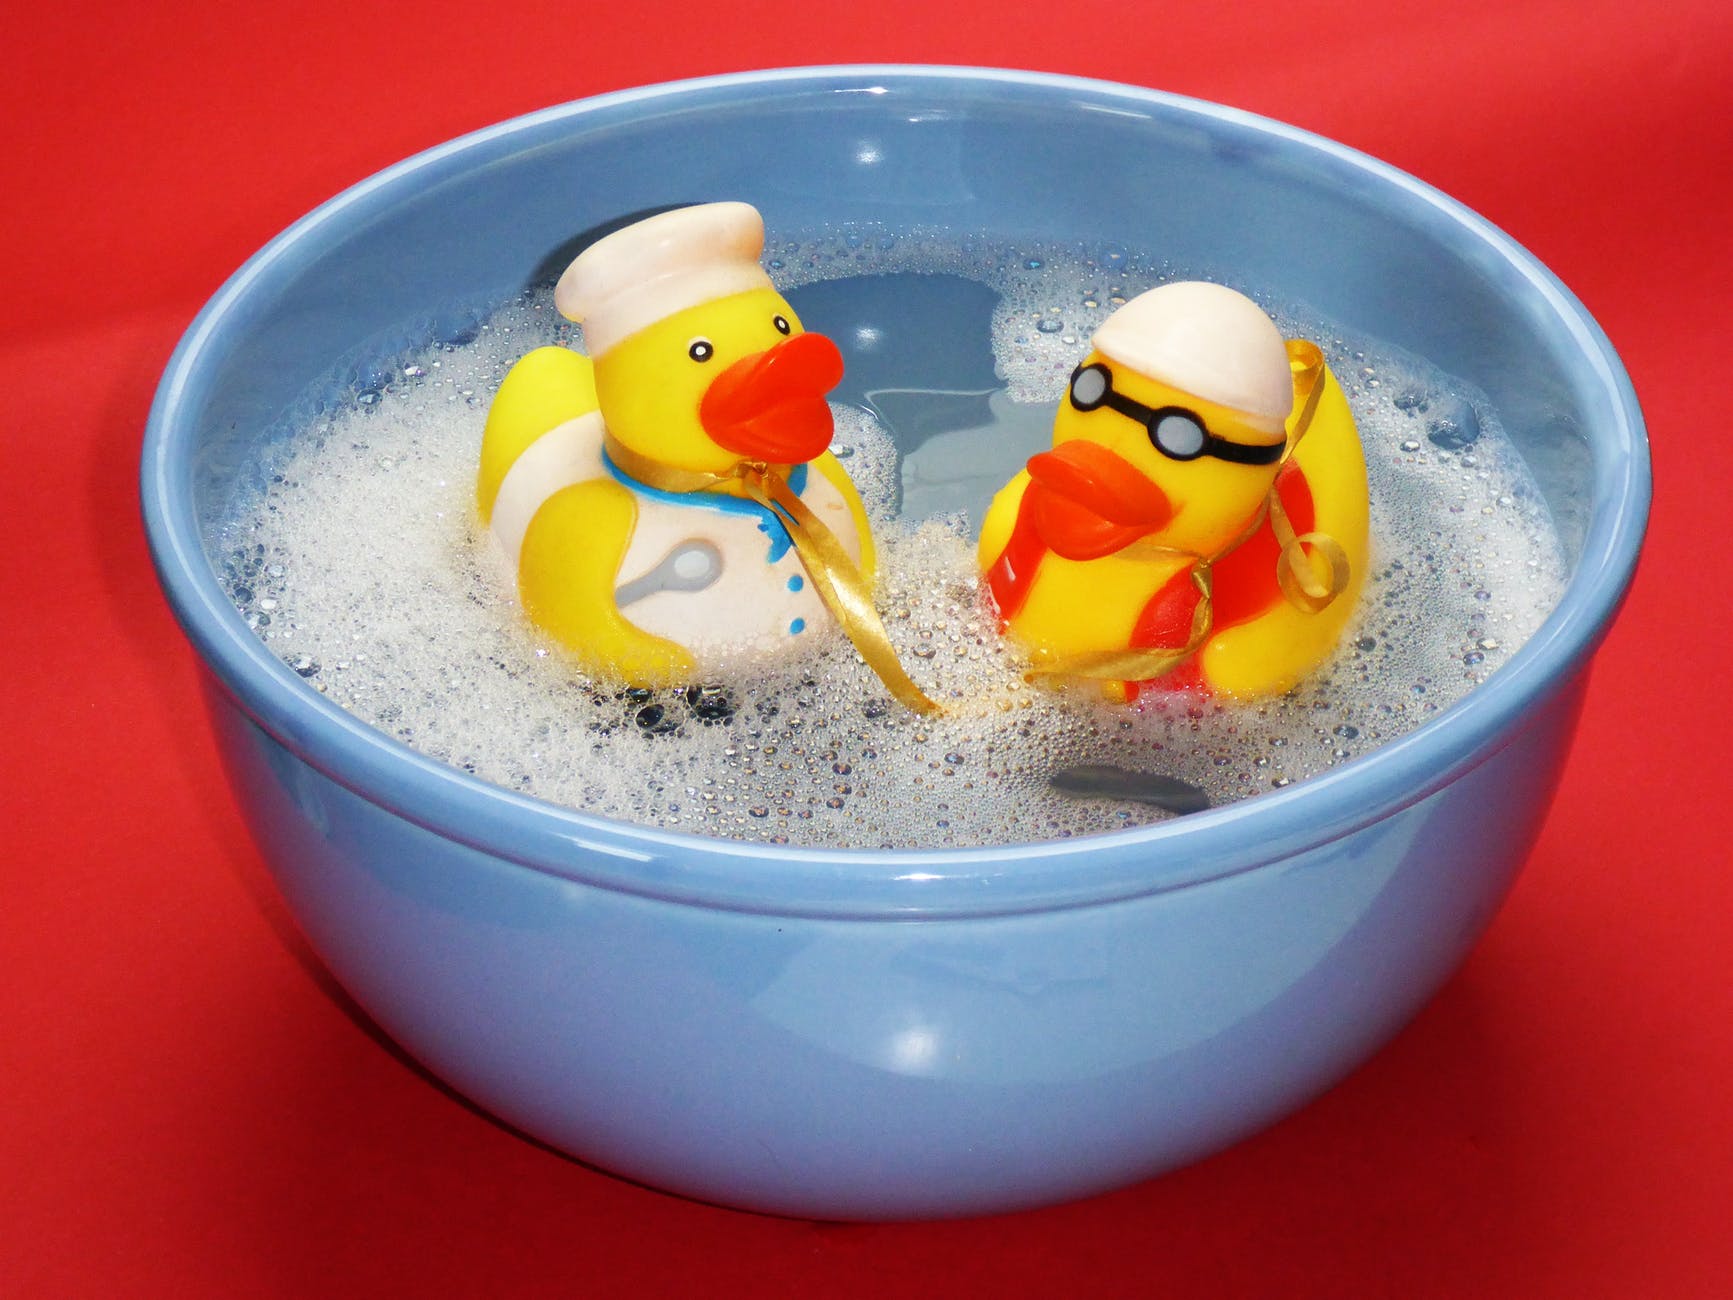 bath-splashing-ducks-joy-162587.jpeg